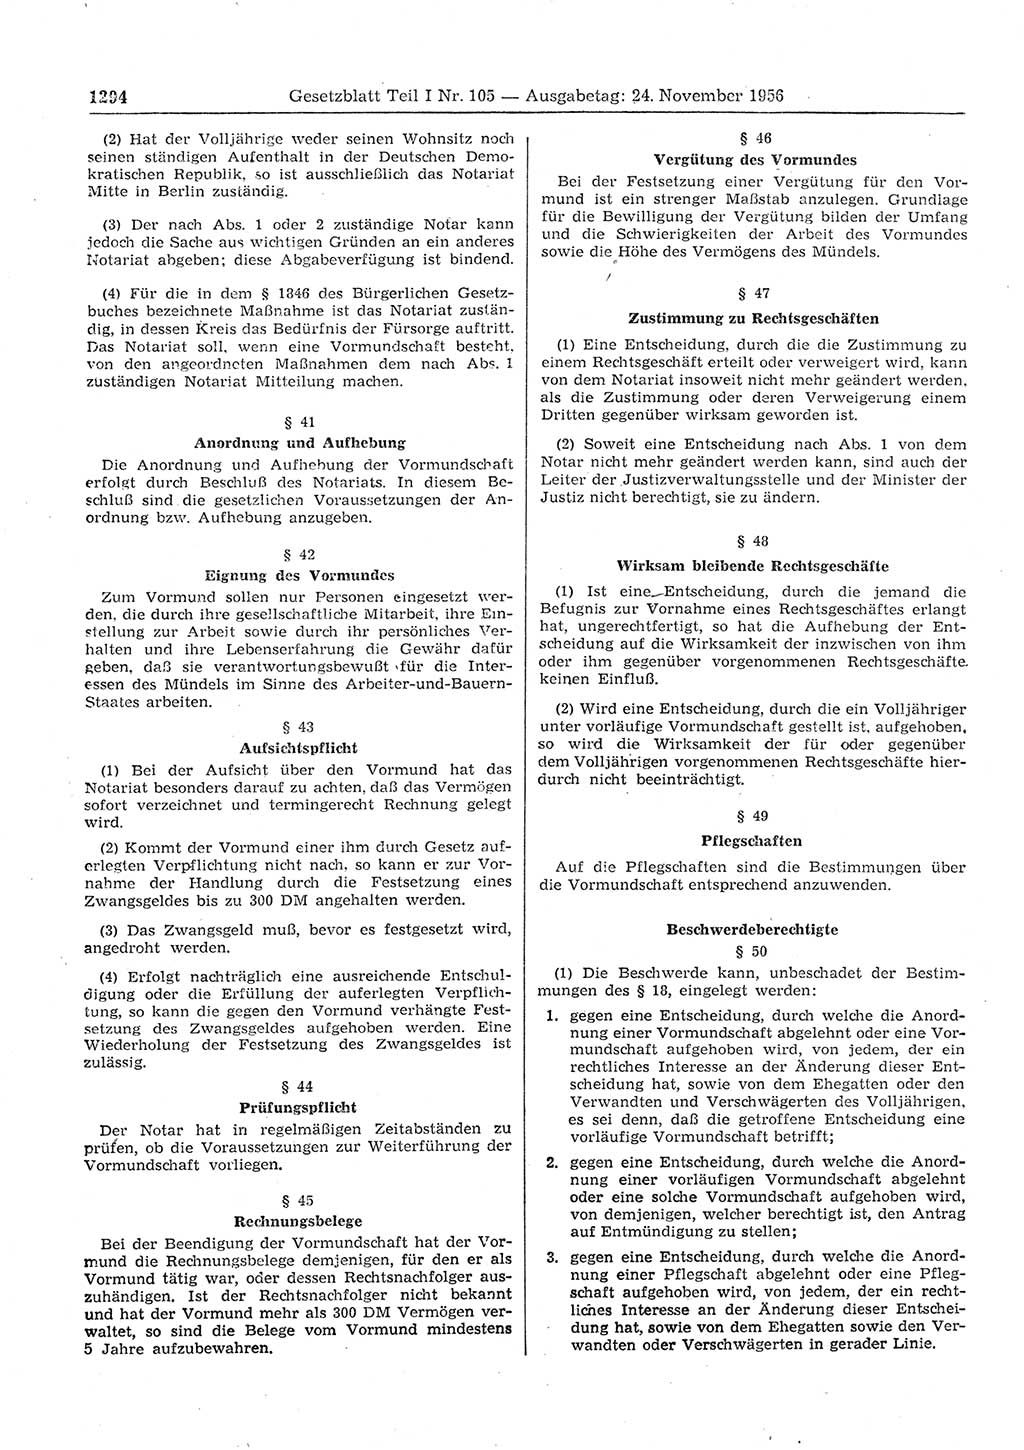 Gesetzblatt (GBl.) der Deutschen Demokratischen Republik (DDR) Teil Ⅰ 1956, Seite 1294 (GBl. DDR Ⅰ 1956, S. 1294)